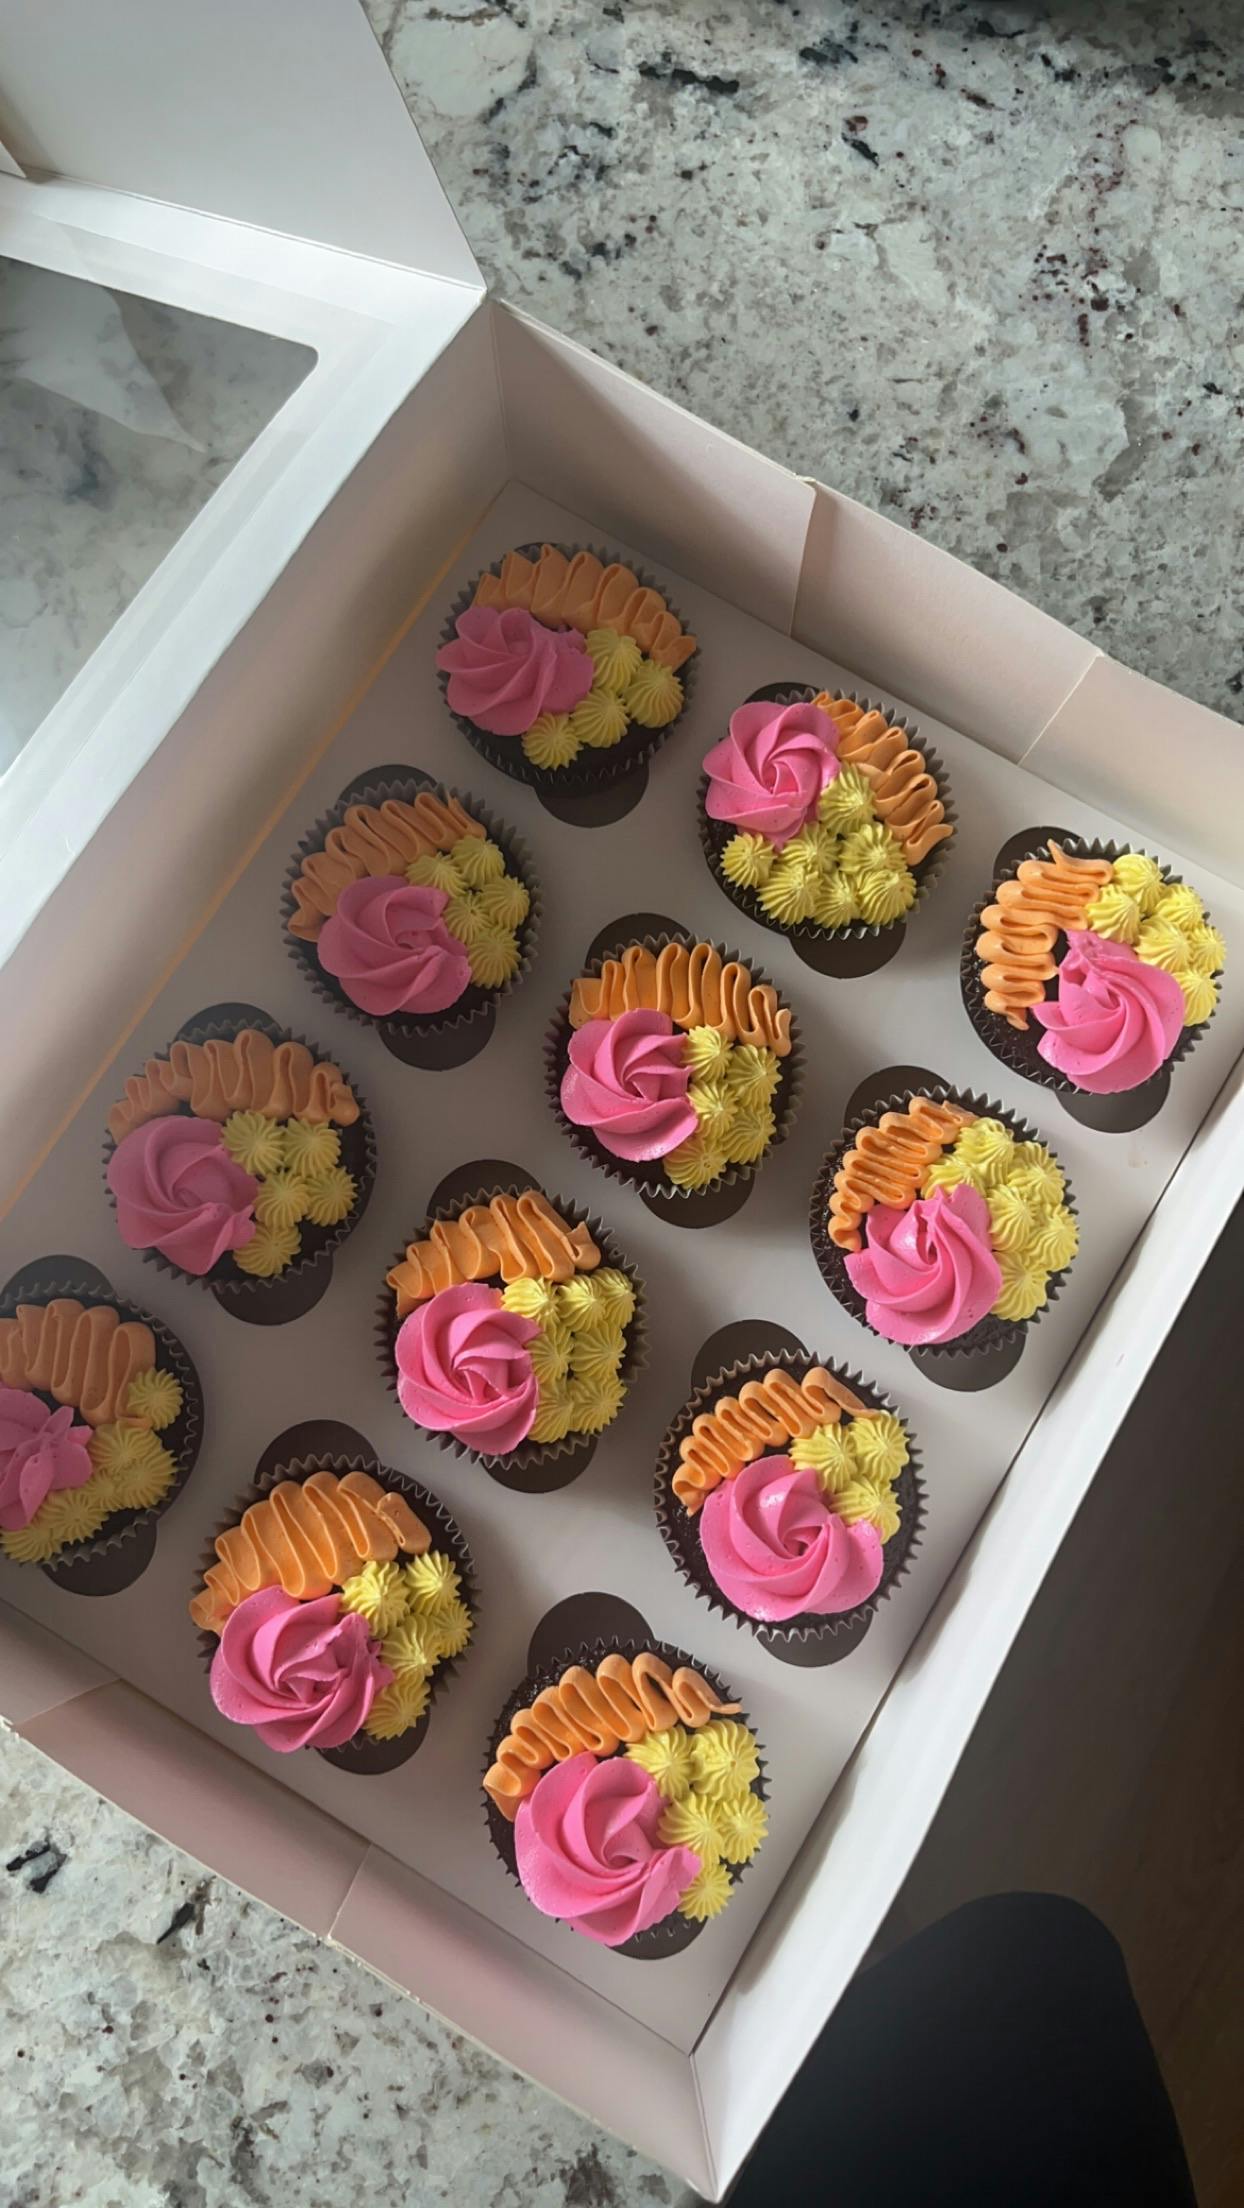 Cupcakes  1 dozen 